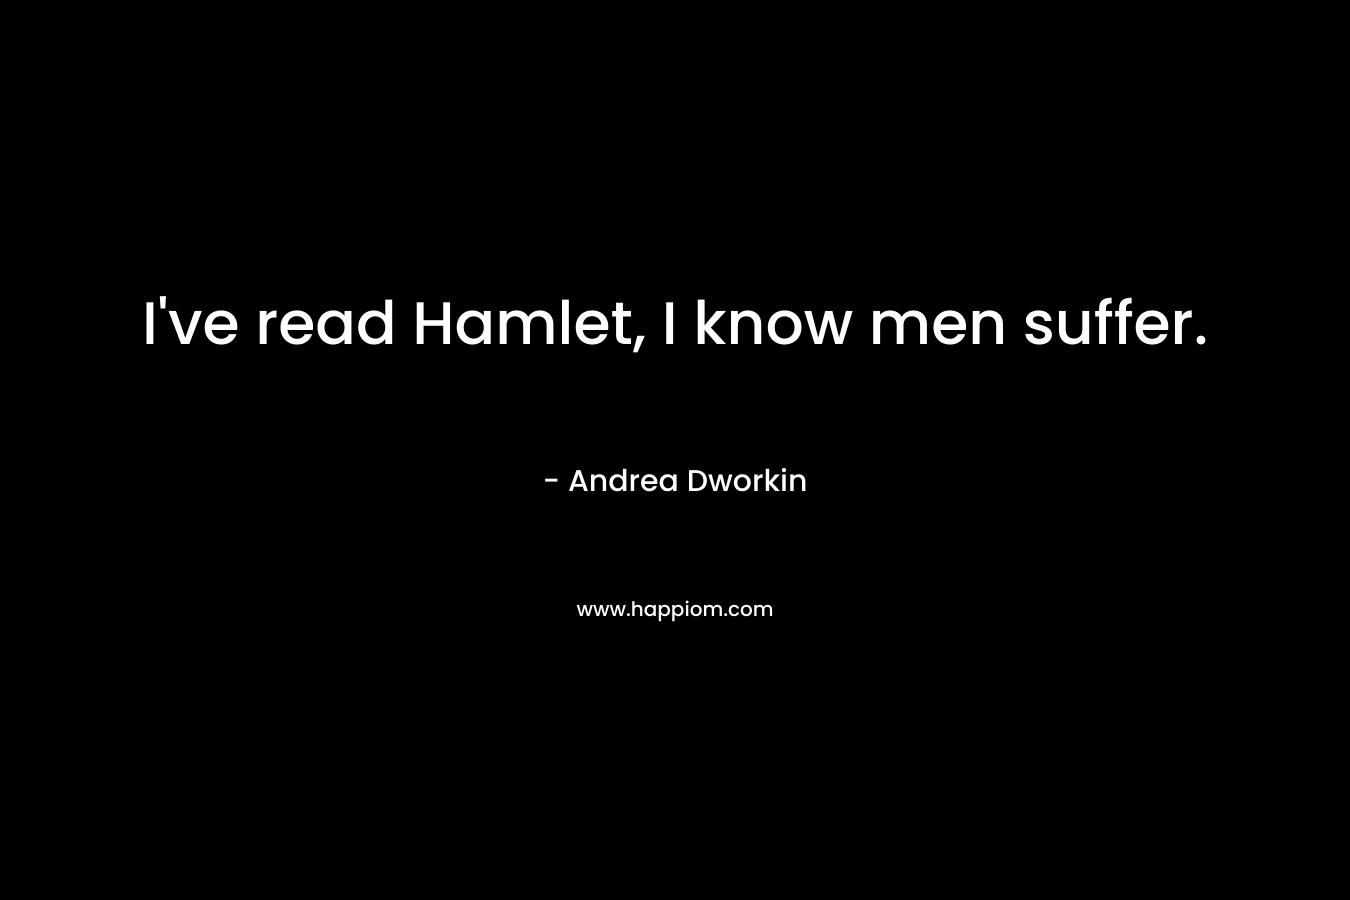 I've read Hamlet, I know men suffer.